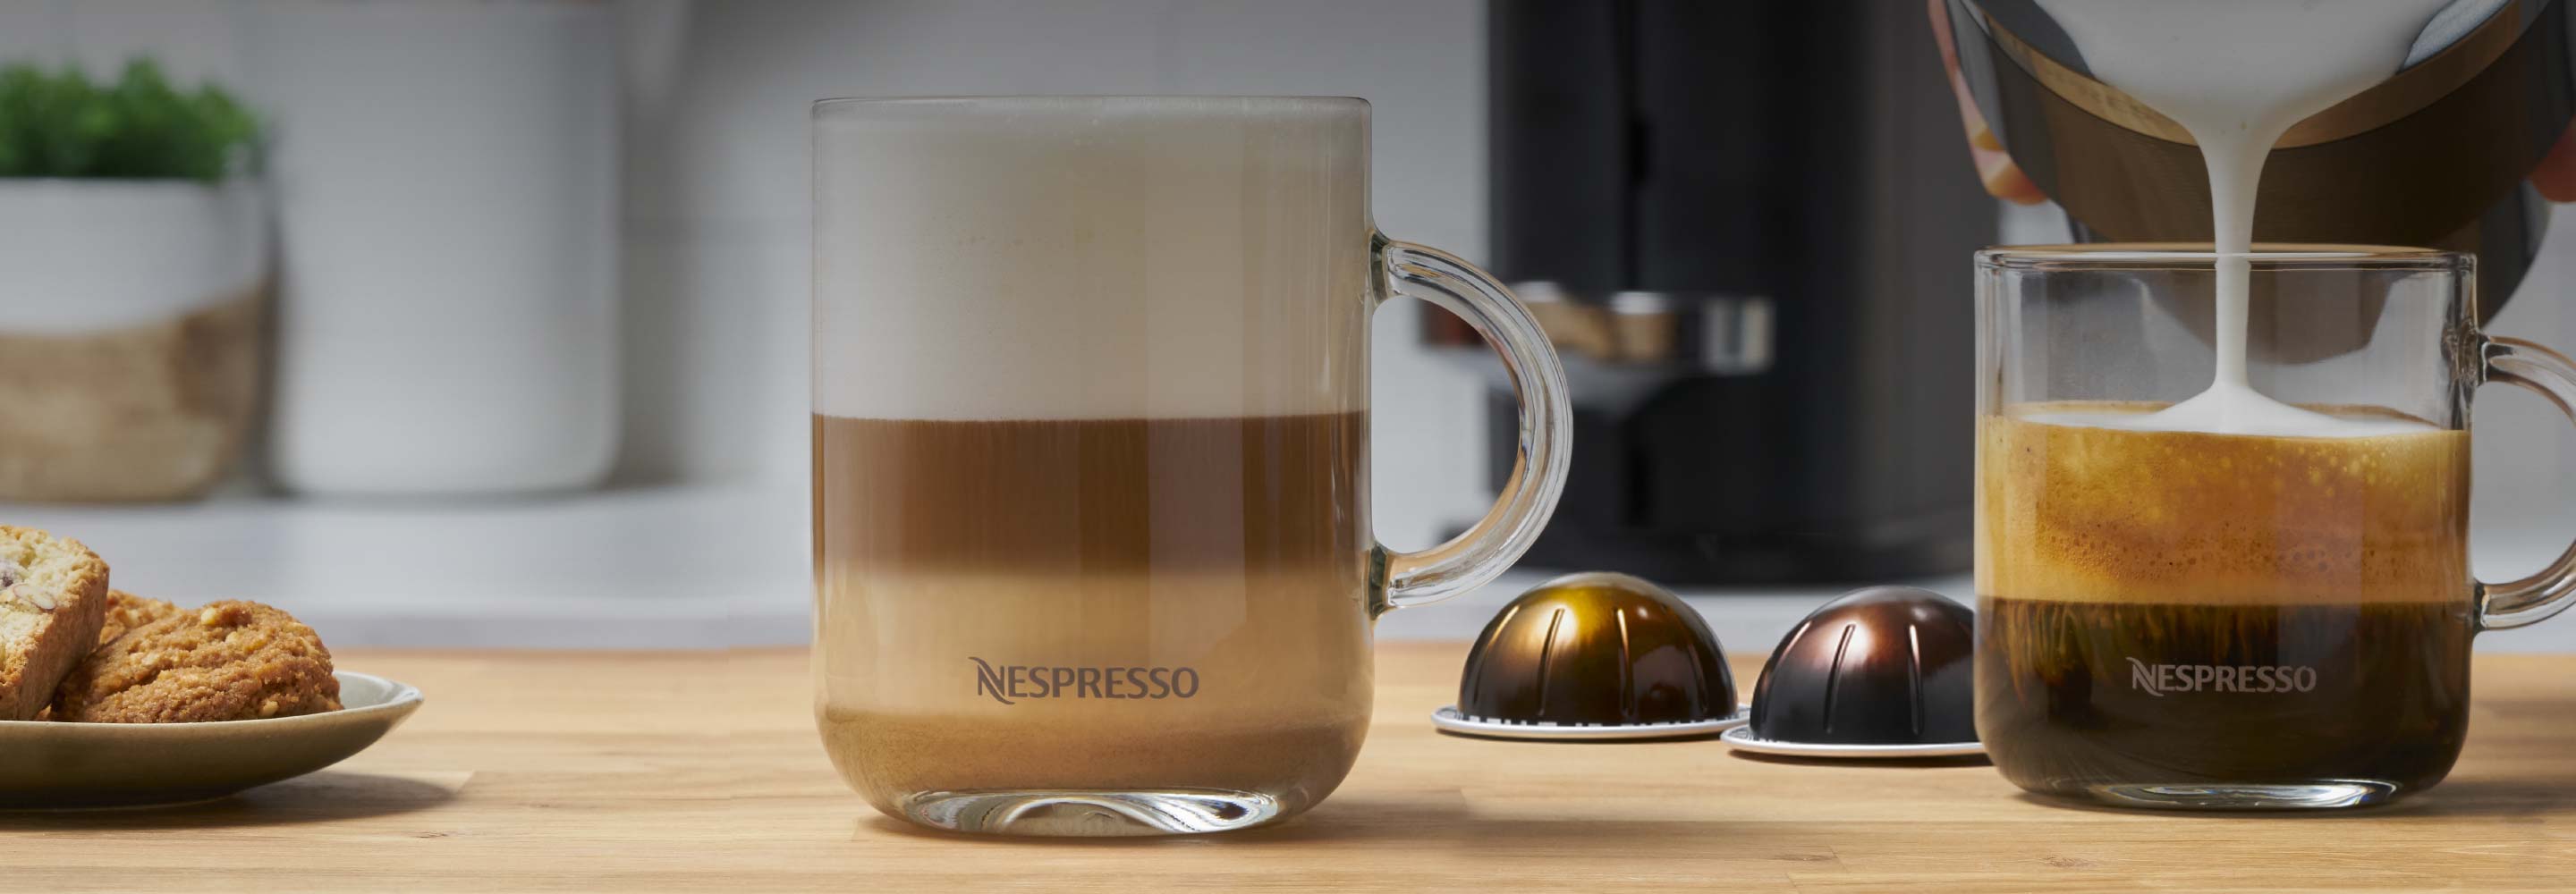 Consigue una cafetera Nespresso gratis gracias a esta promoción - Showroom